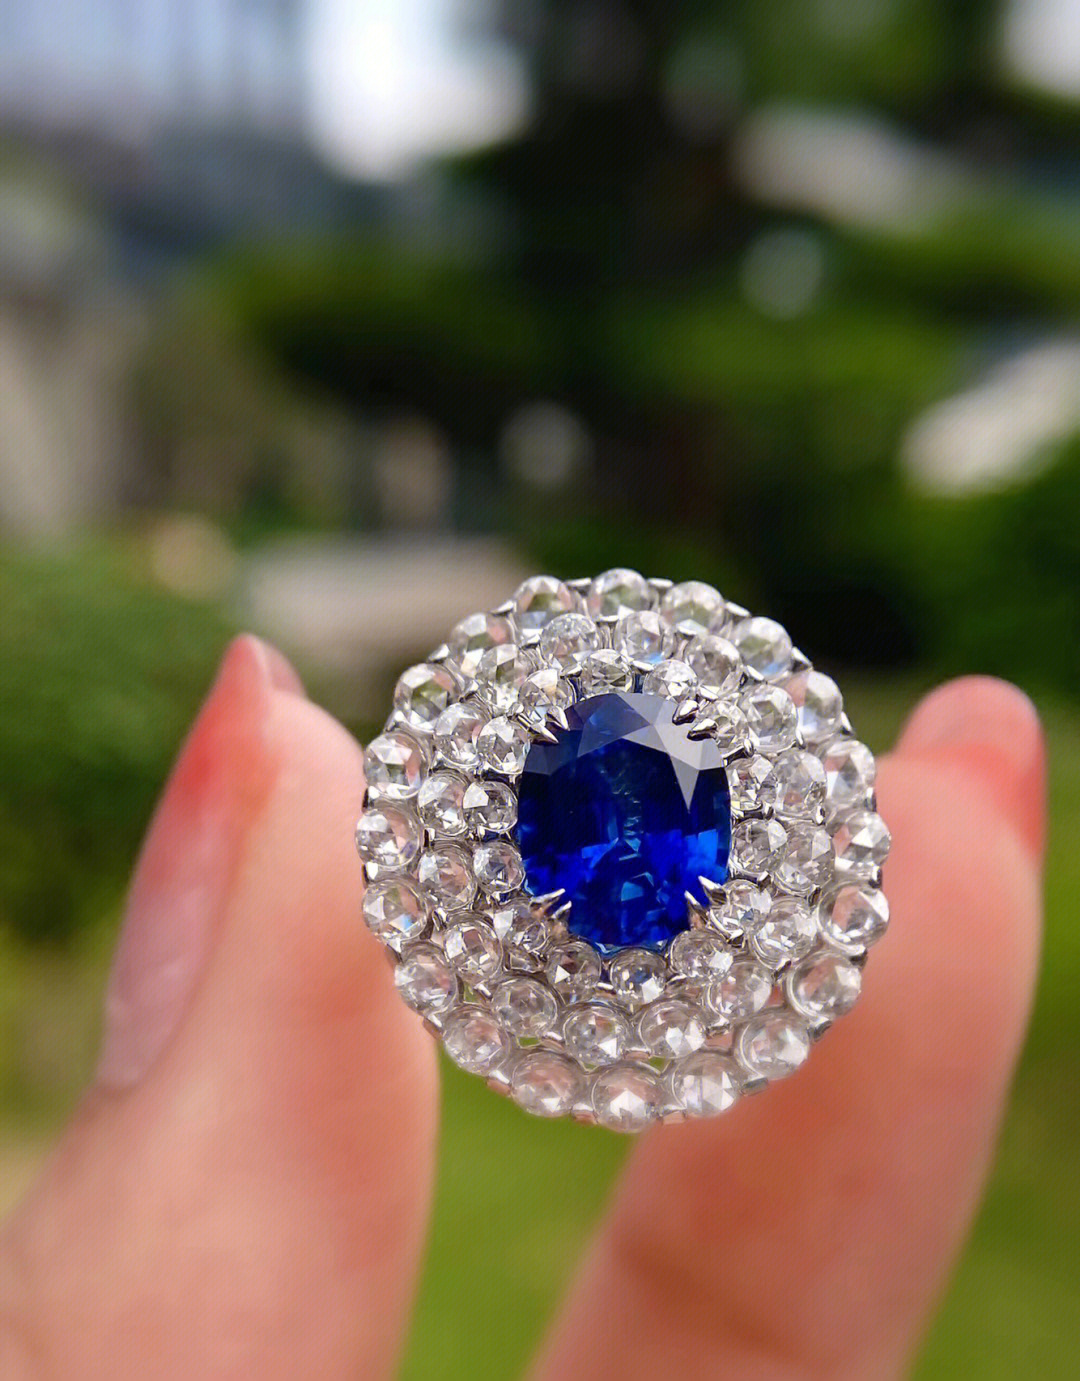 自然光拍摄90:蓝宝石作为四大名贵宝石之一,可真的不是虚吹,颜色